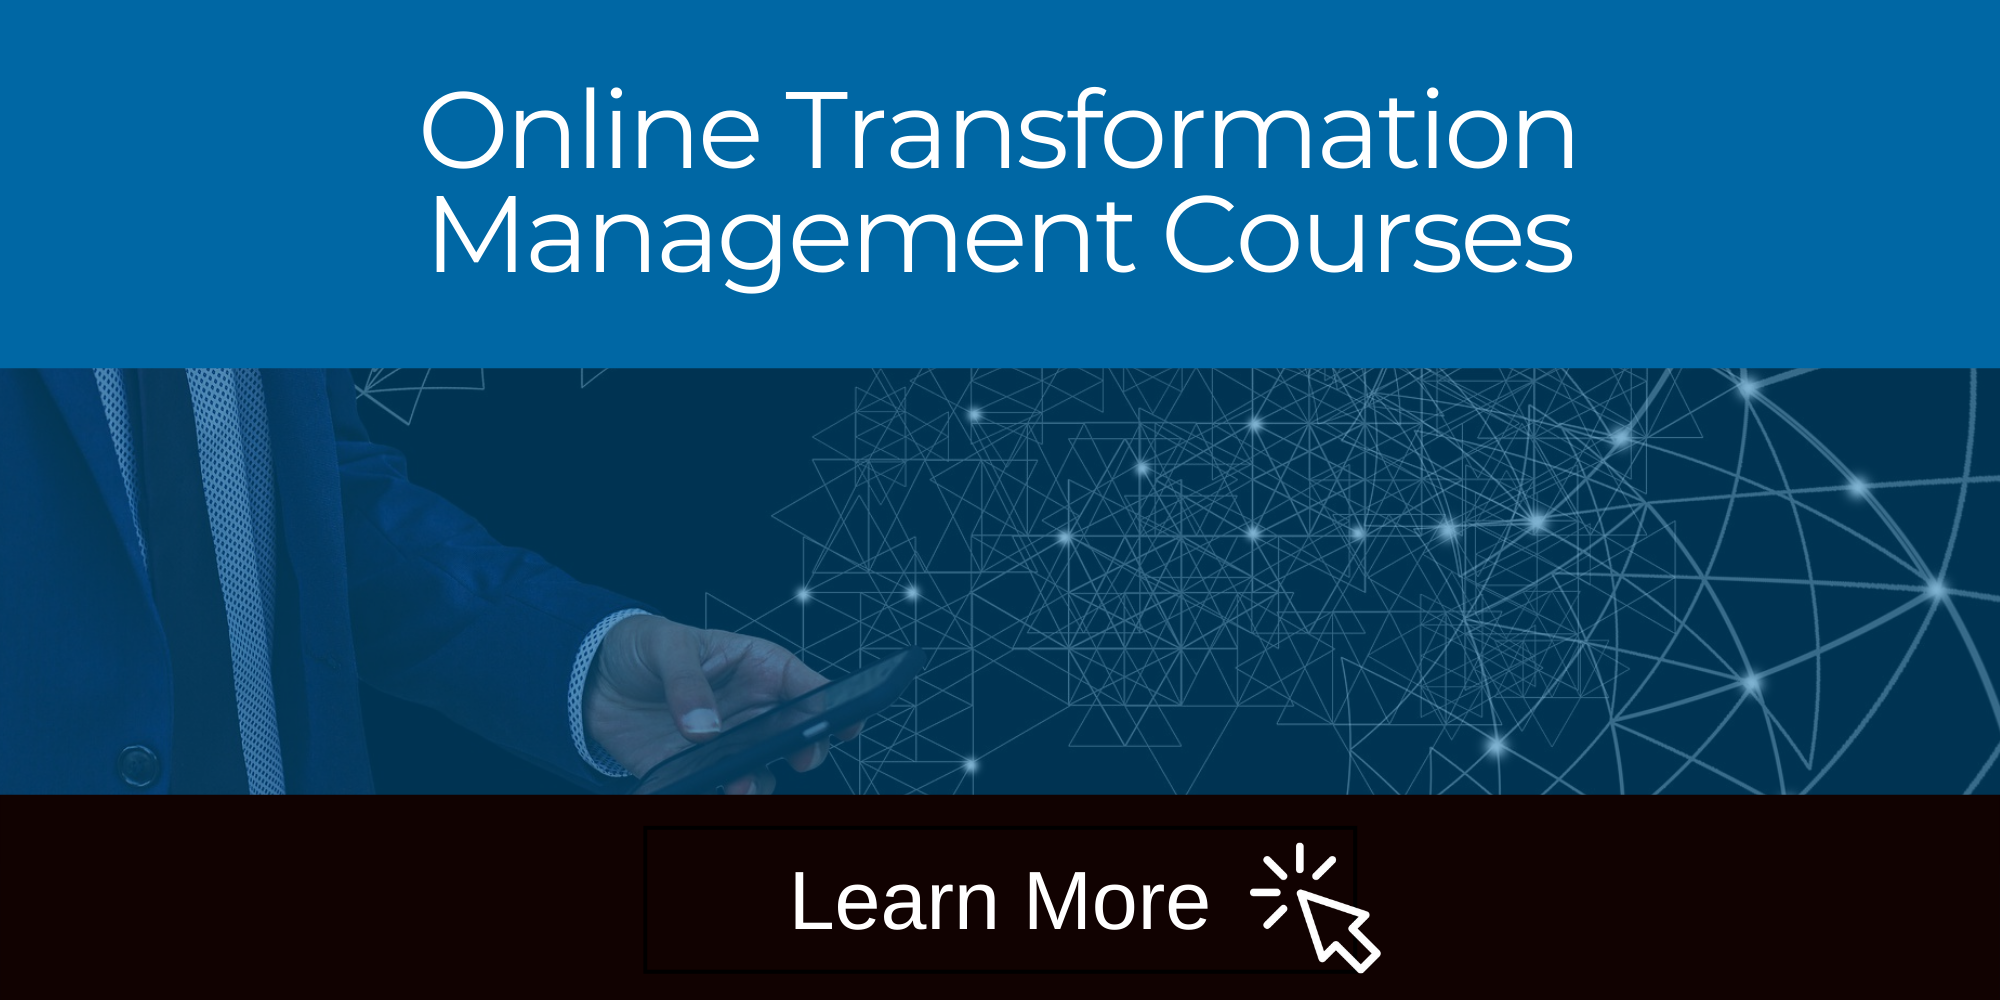 Online Courses